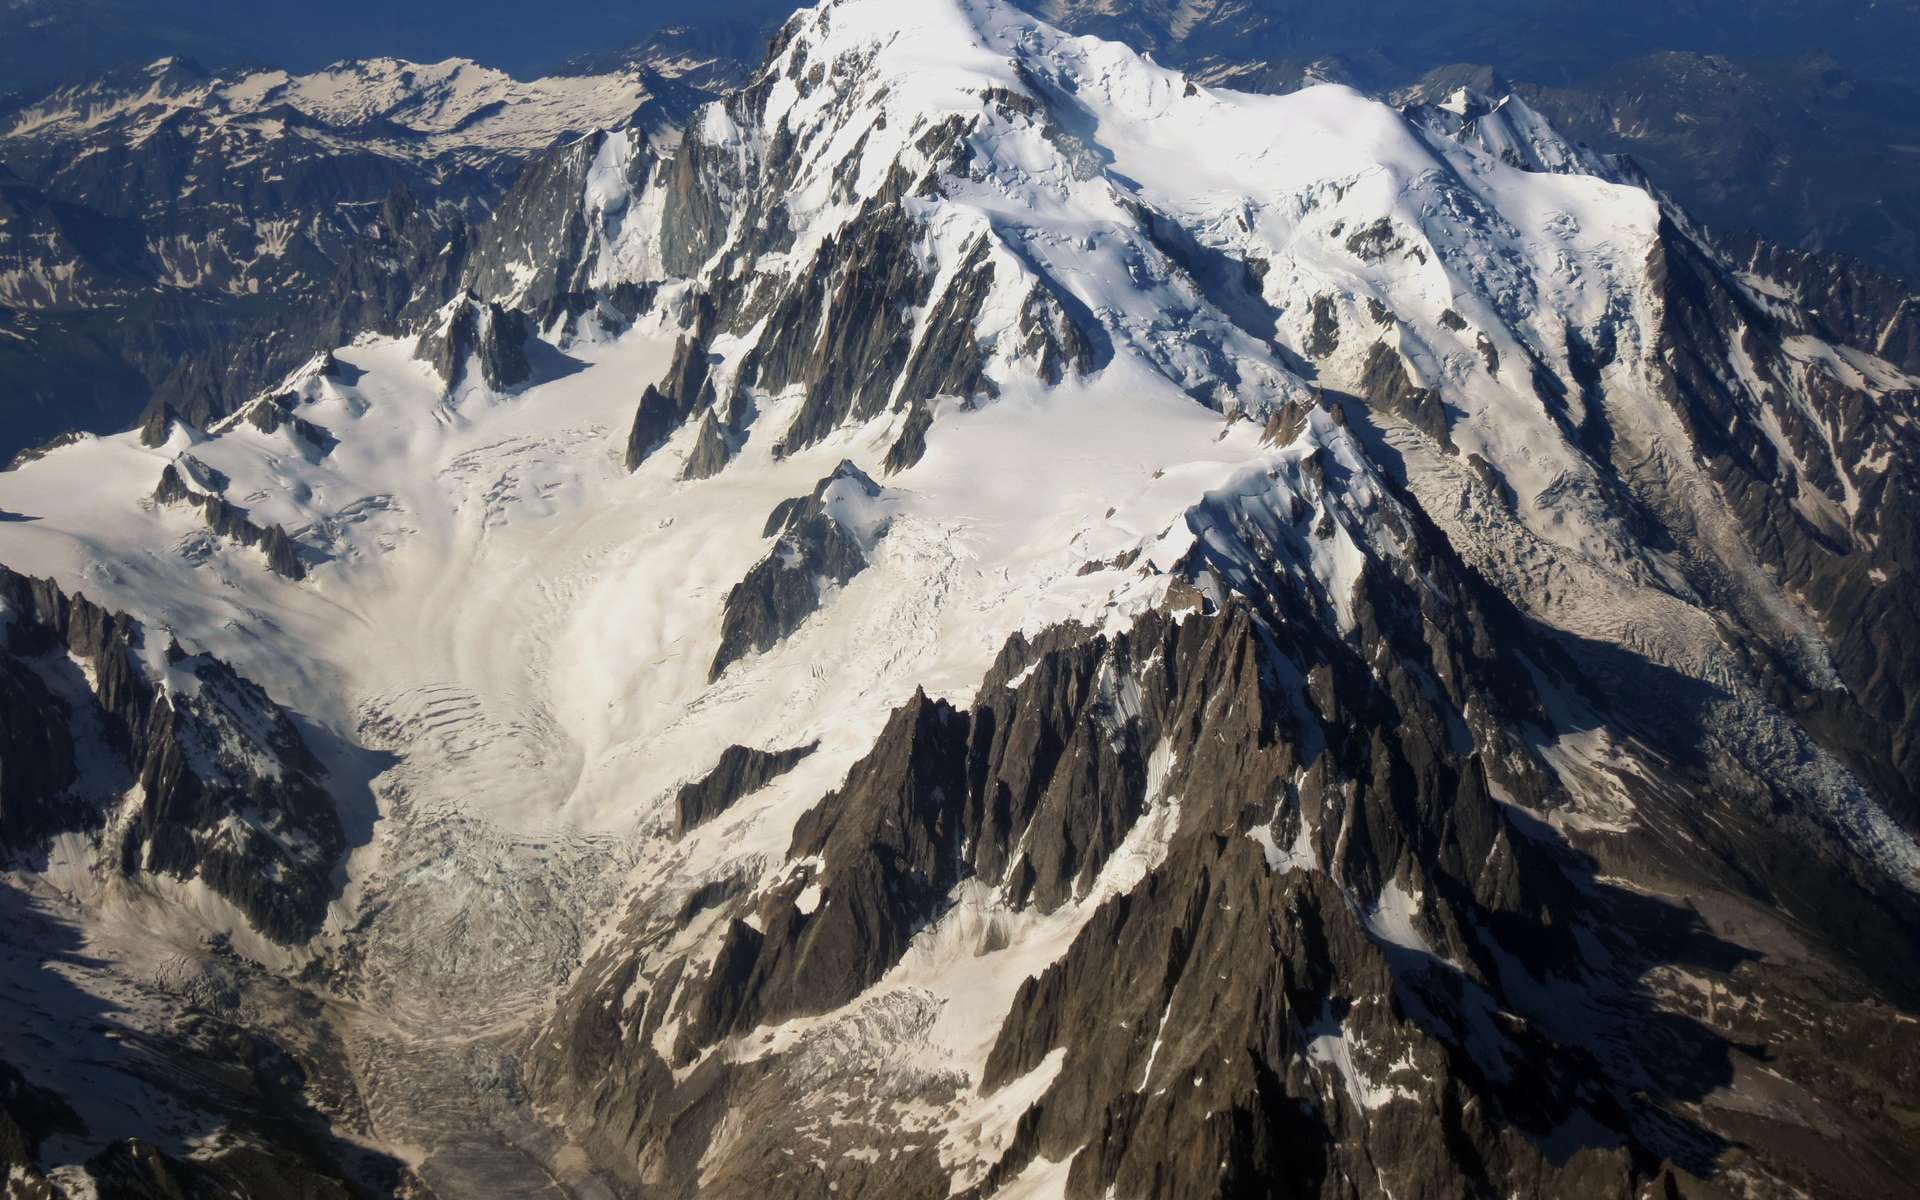 Le mont Blanc fait partie des massifs cristallins externes, les plus hauts sommets des Alpes résultant de la collision entre les plaques européenne et adriatique. © Tofig Rashidov, imaggeo.egu.eu